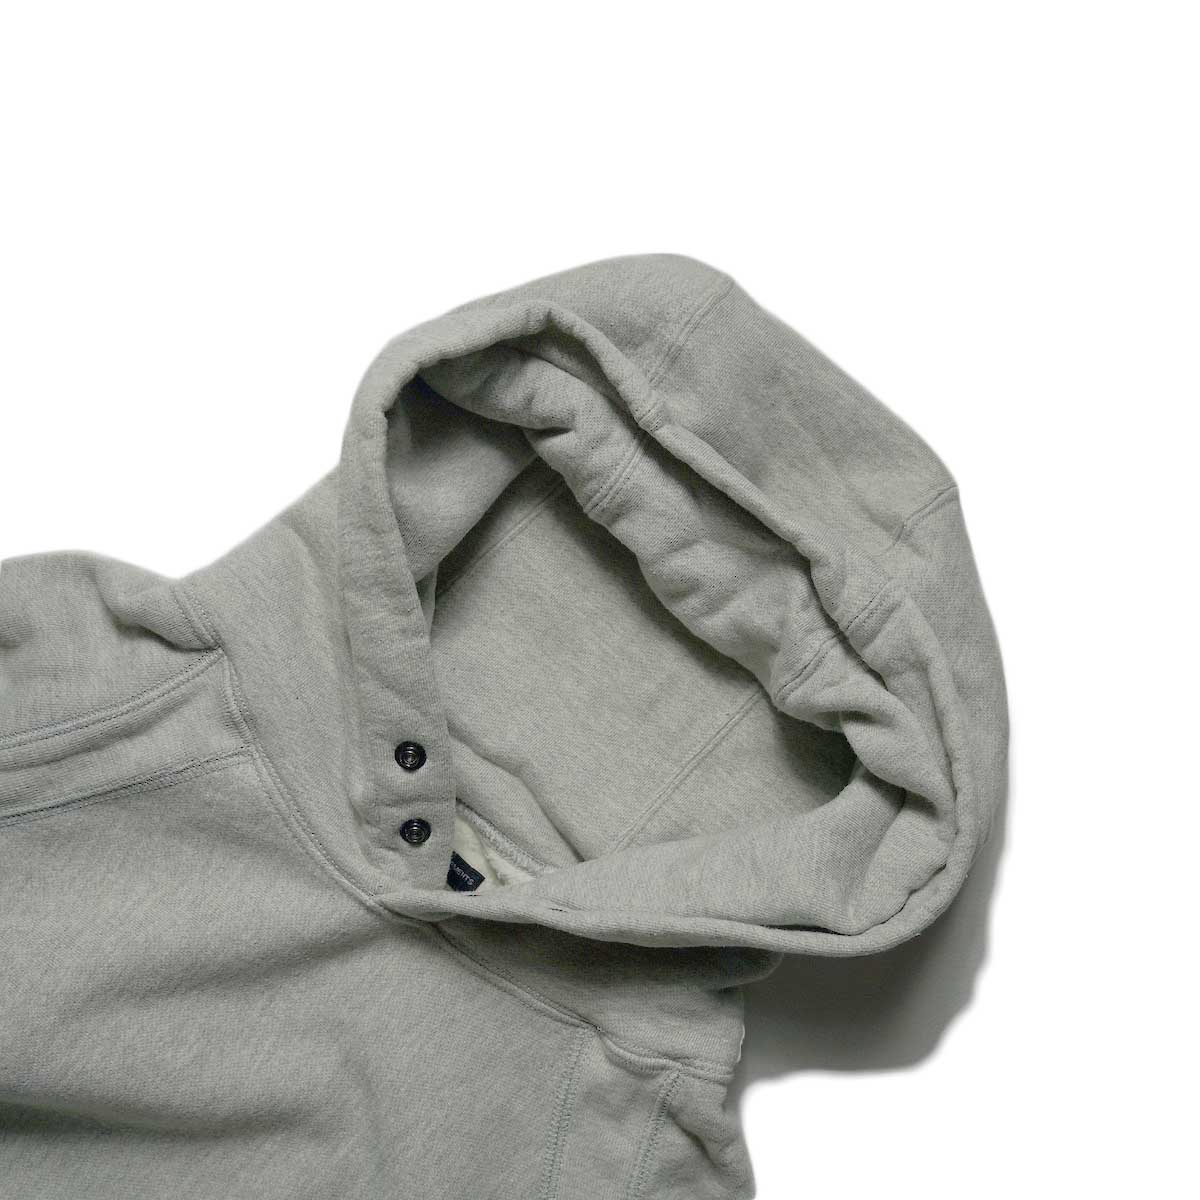  Engineered Garments / Raglan Hoodie (Gray)ネック